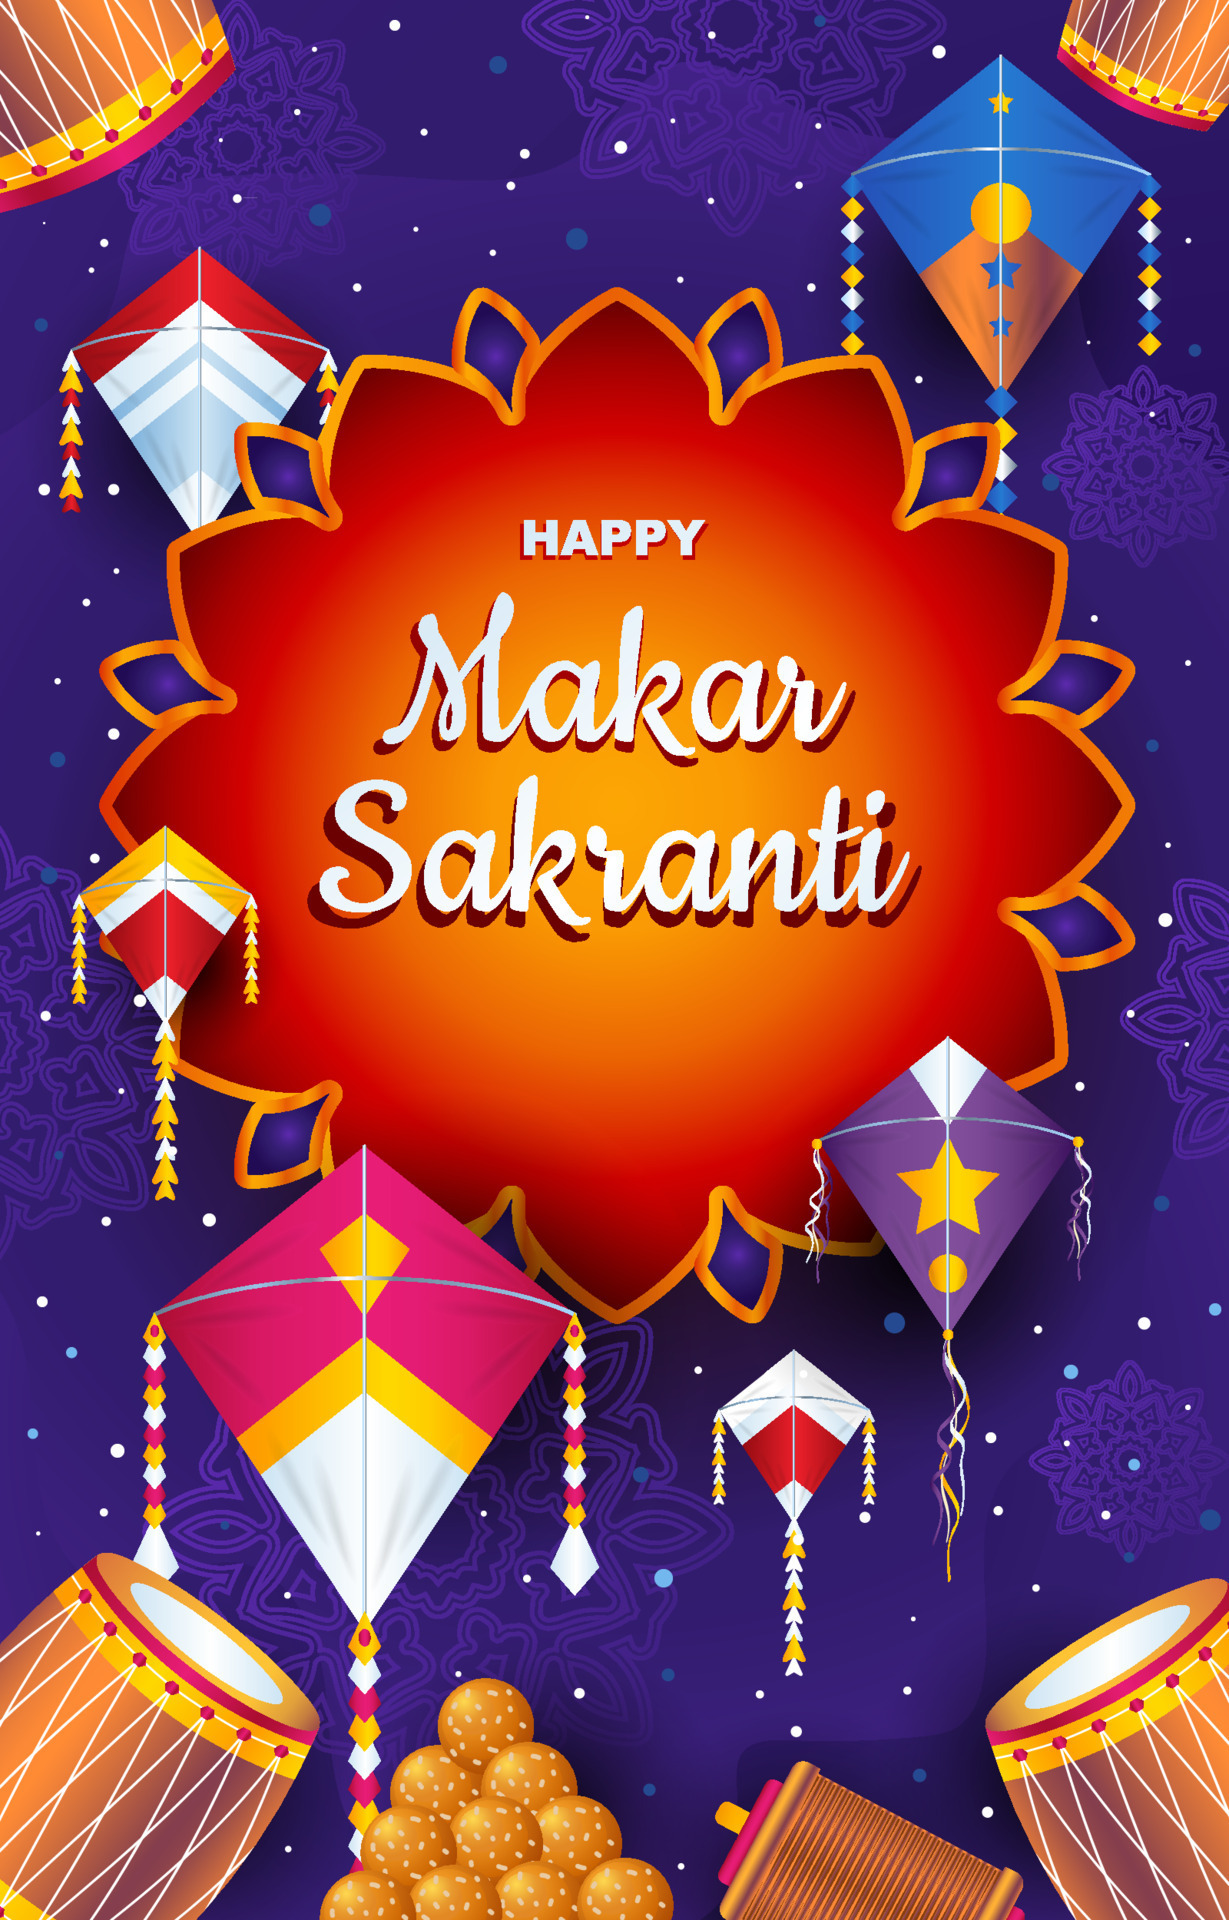 Happy Makar Sankranti Background 16305434 Vector Art at Vecteezy